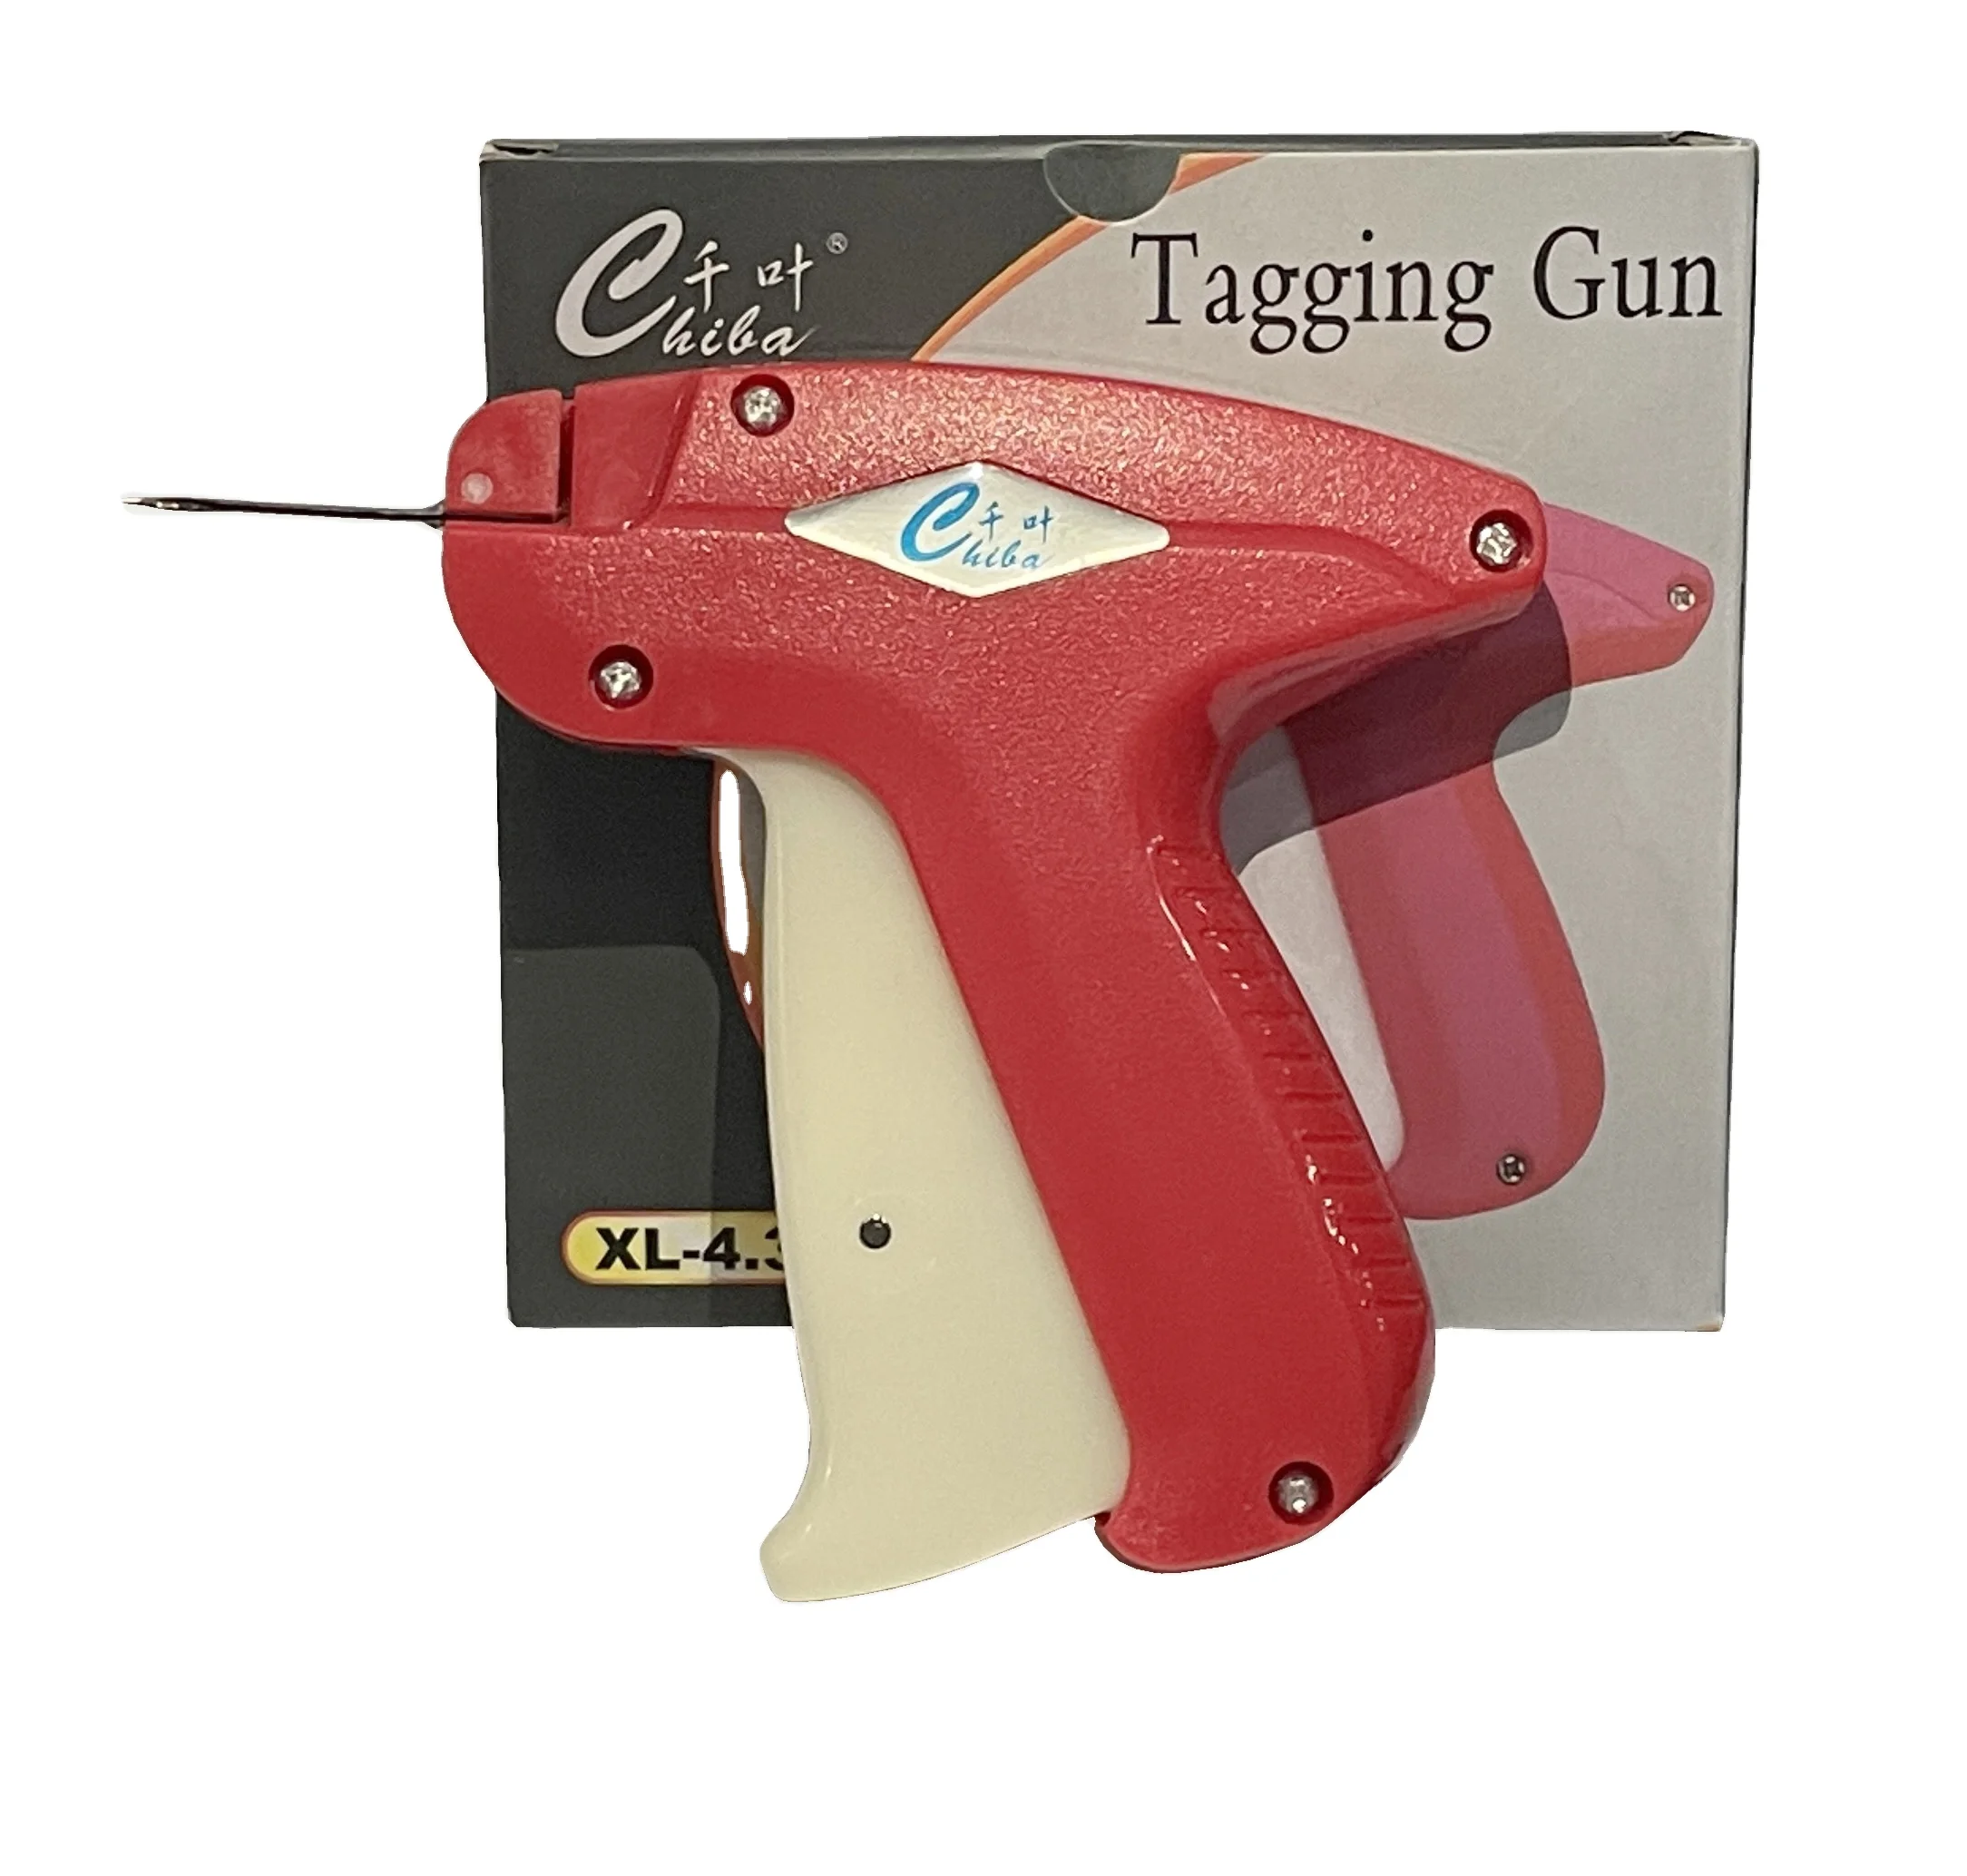 ABS Tag gun XL -4.3 long needle fine tag gun for thick garments